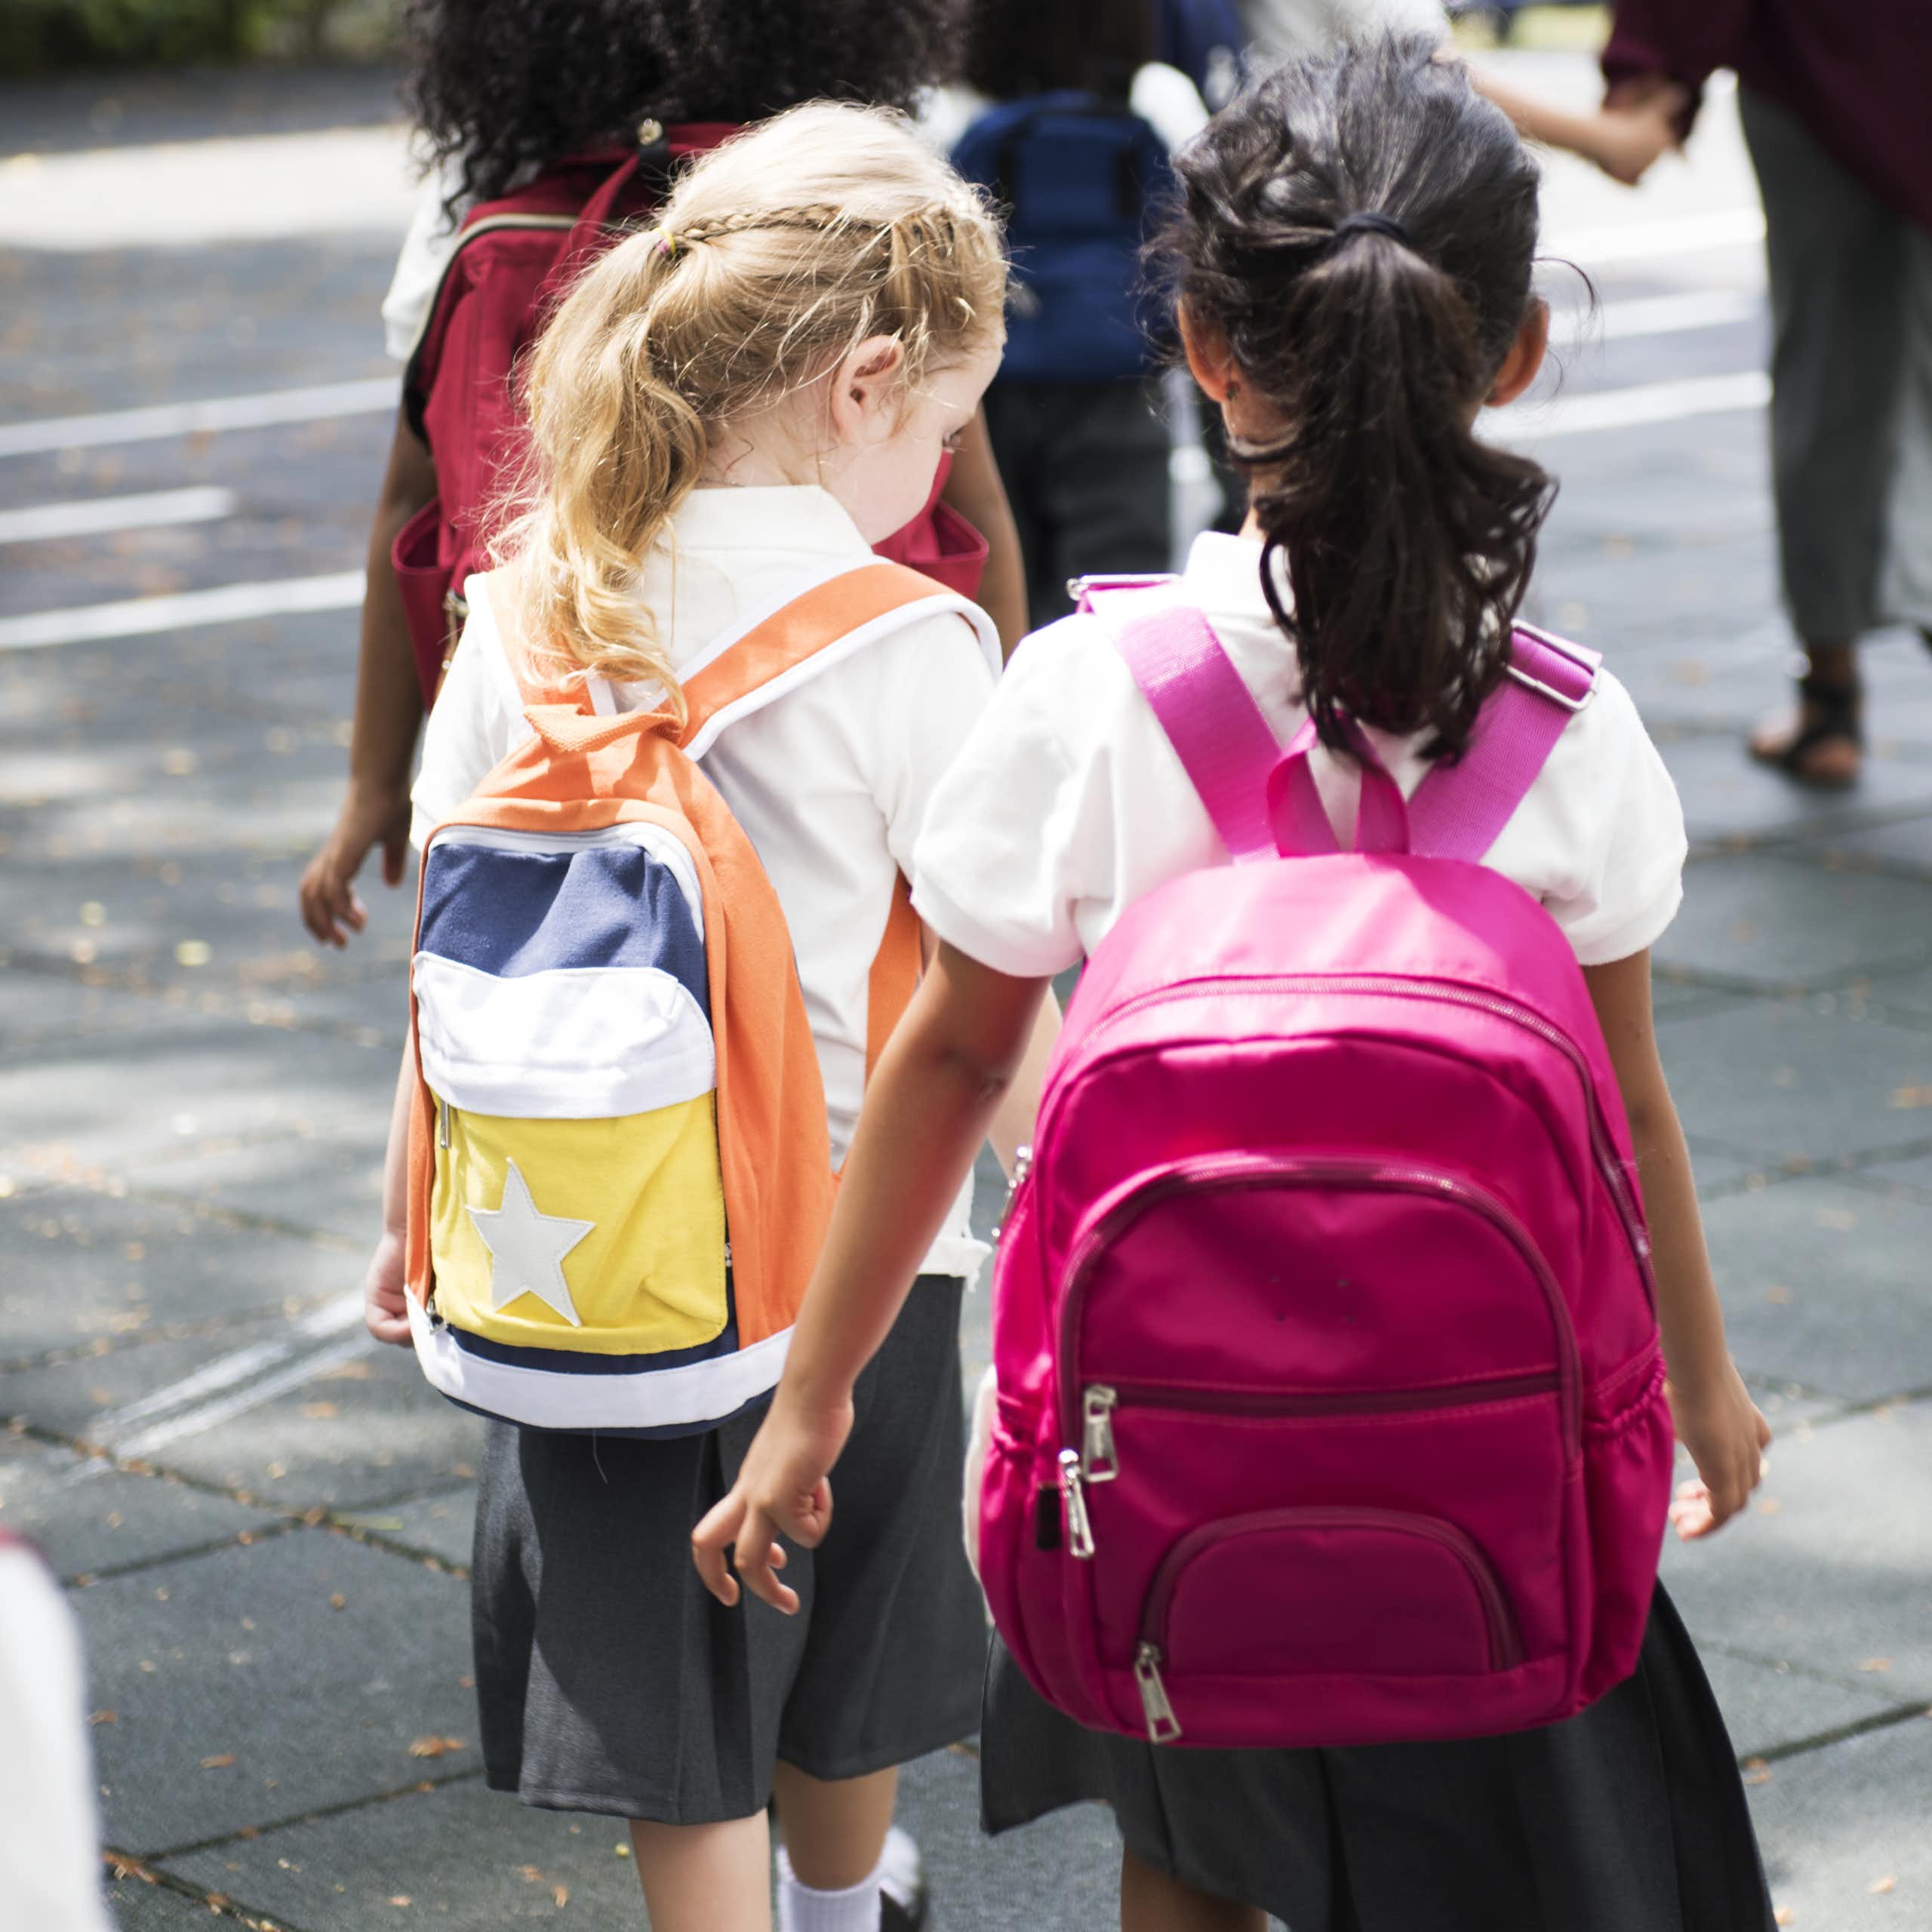 Children in uniforms and rucksacks walking to school